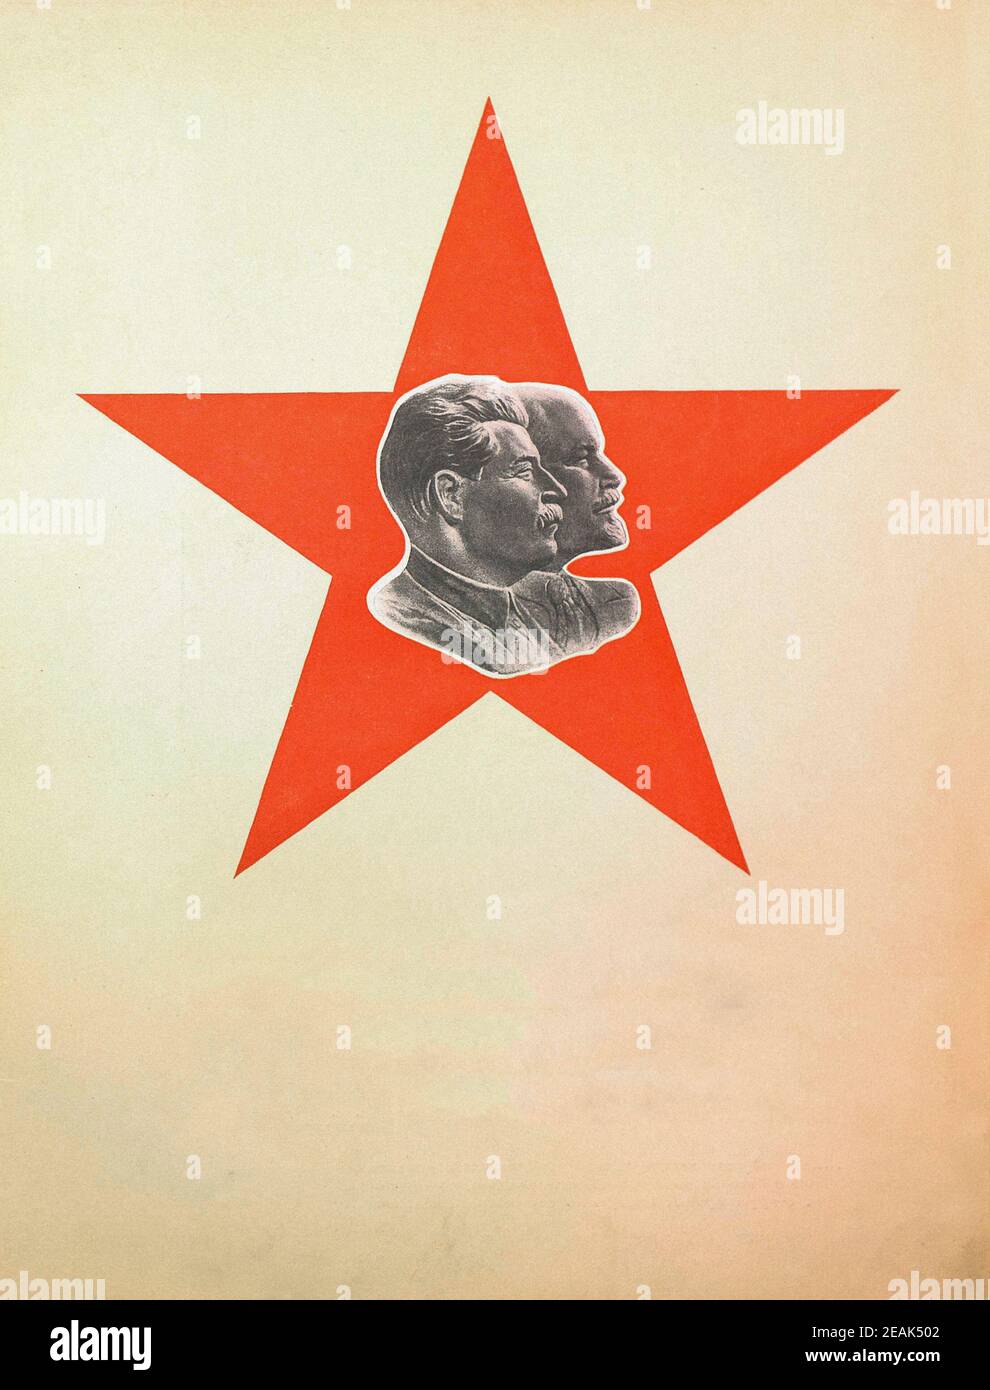 Esercito Rosso. Dal libro di propaganda sovietico del 1937. I leader sovietici Lenin e Stalin sullo sfondo della stella rossa. Foto Stock